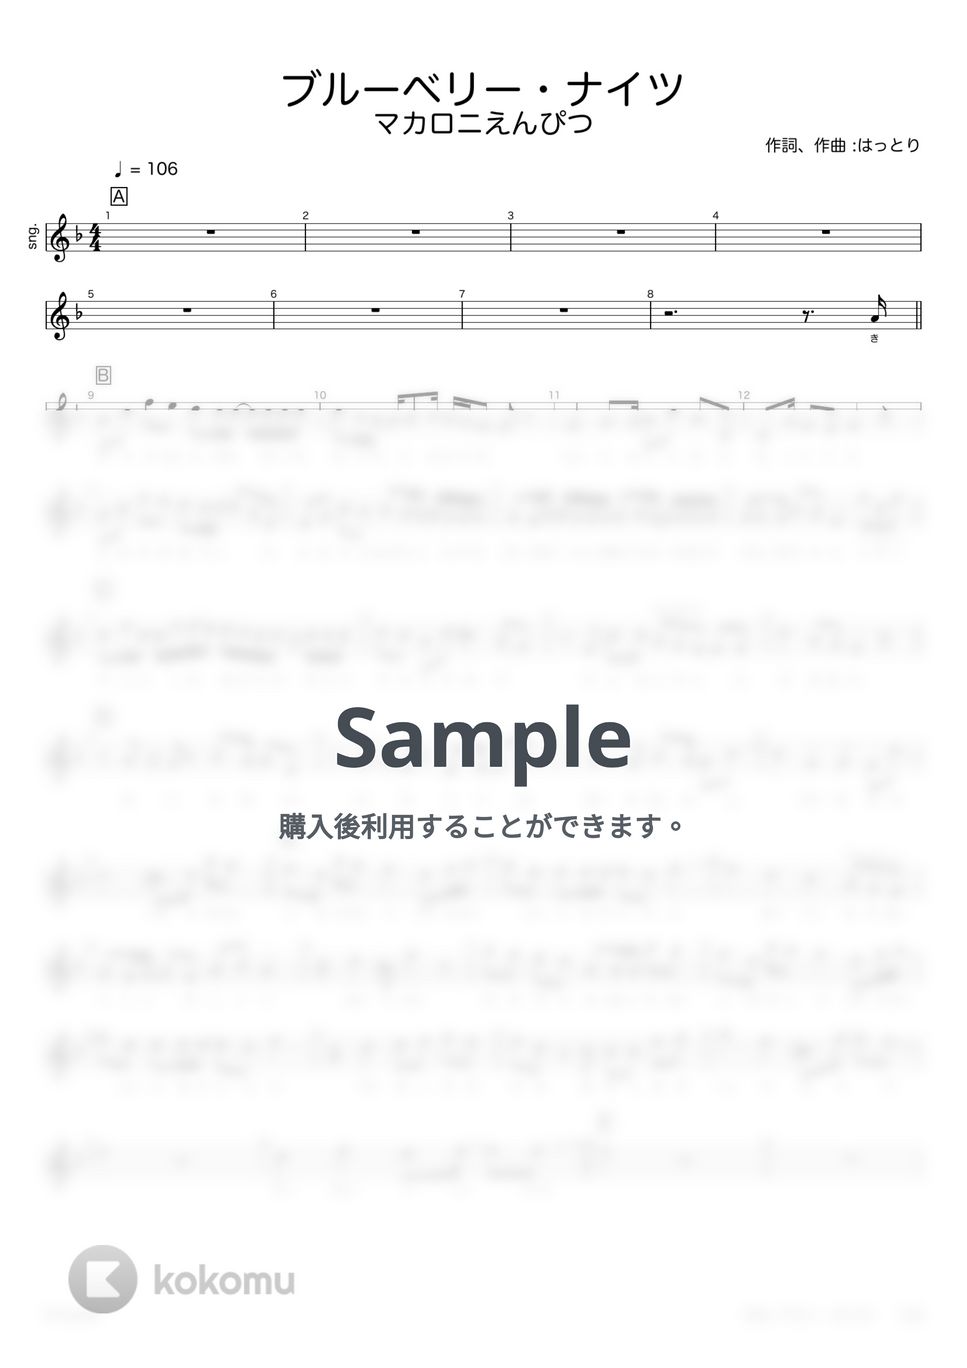 マカロニえんぴつ - ブルーベリー・ナイツ (メロディー譜、歌詞付き) by G's score